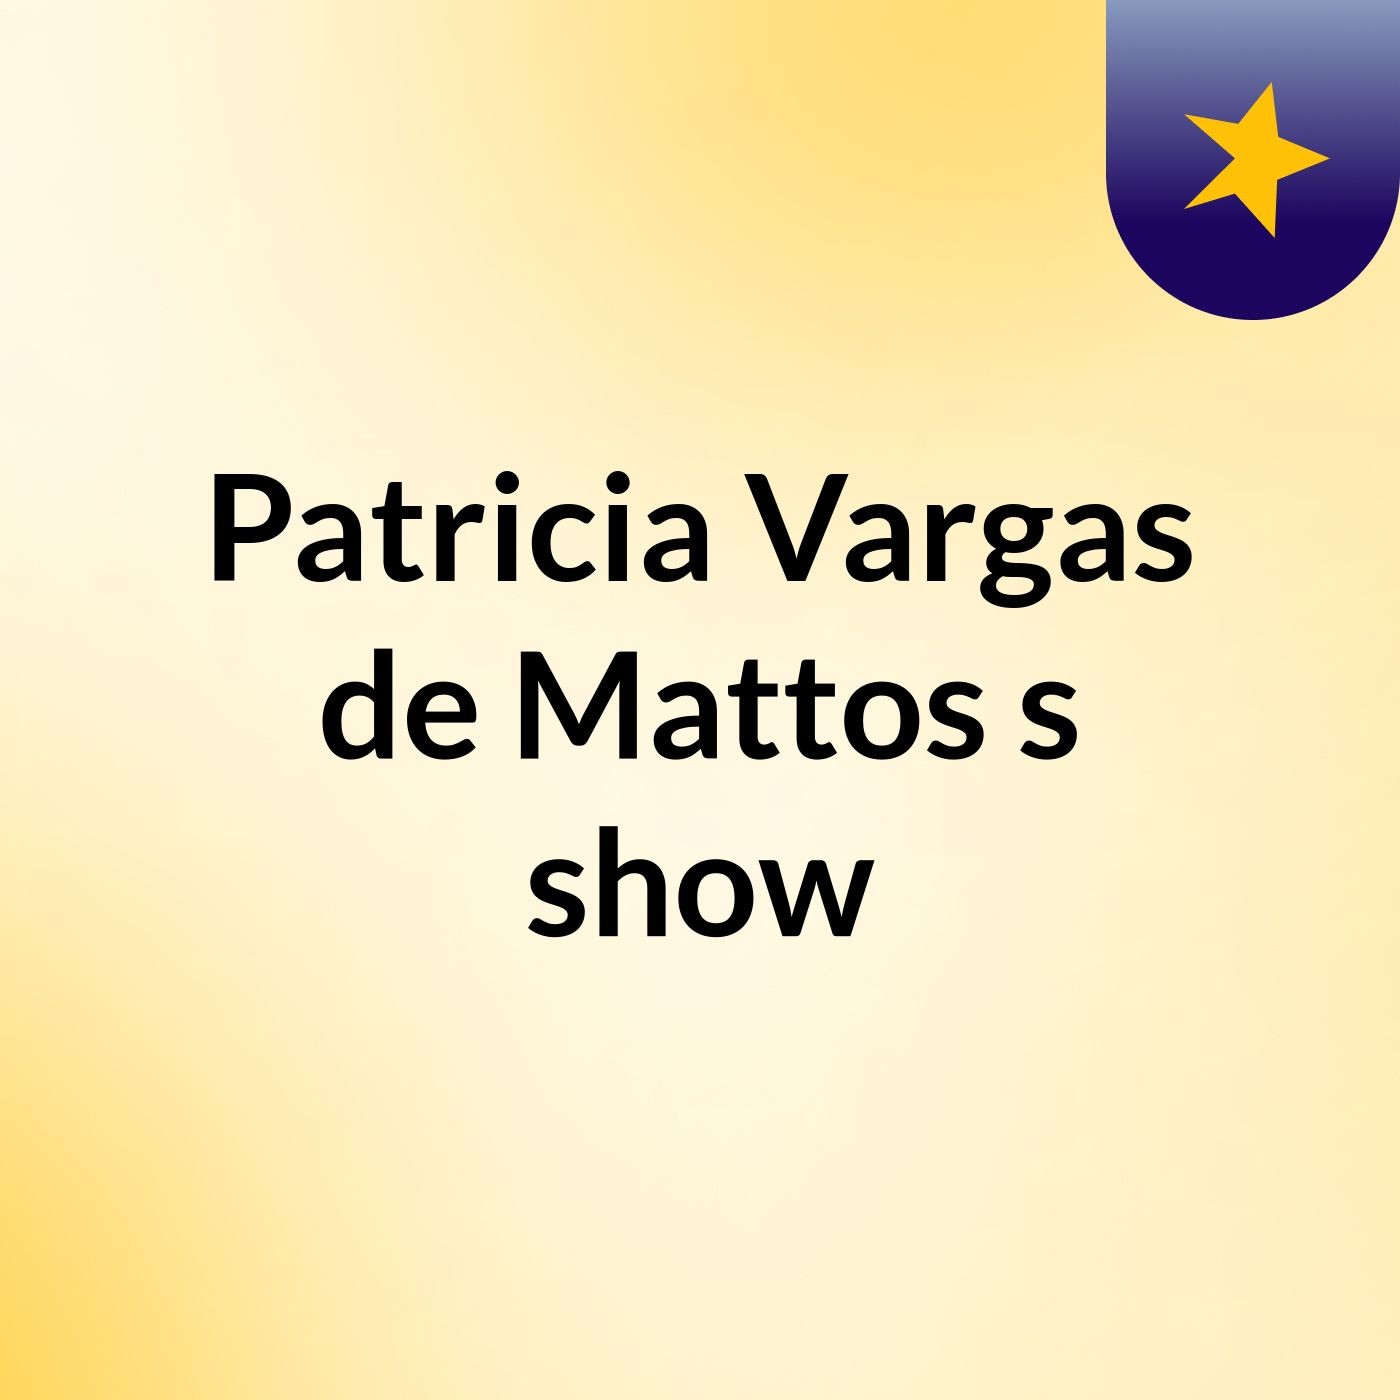 Episódio 15 - Patricia Vargas de Mattos's show